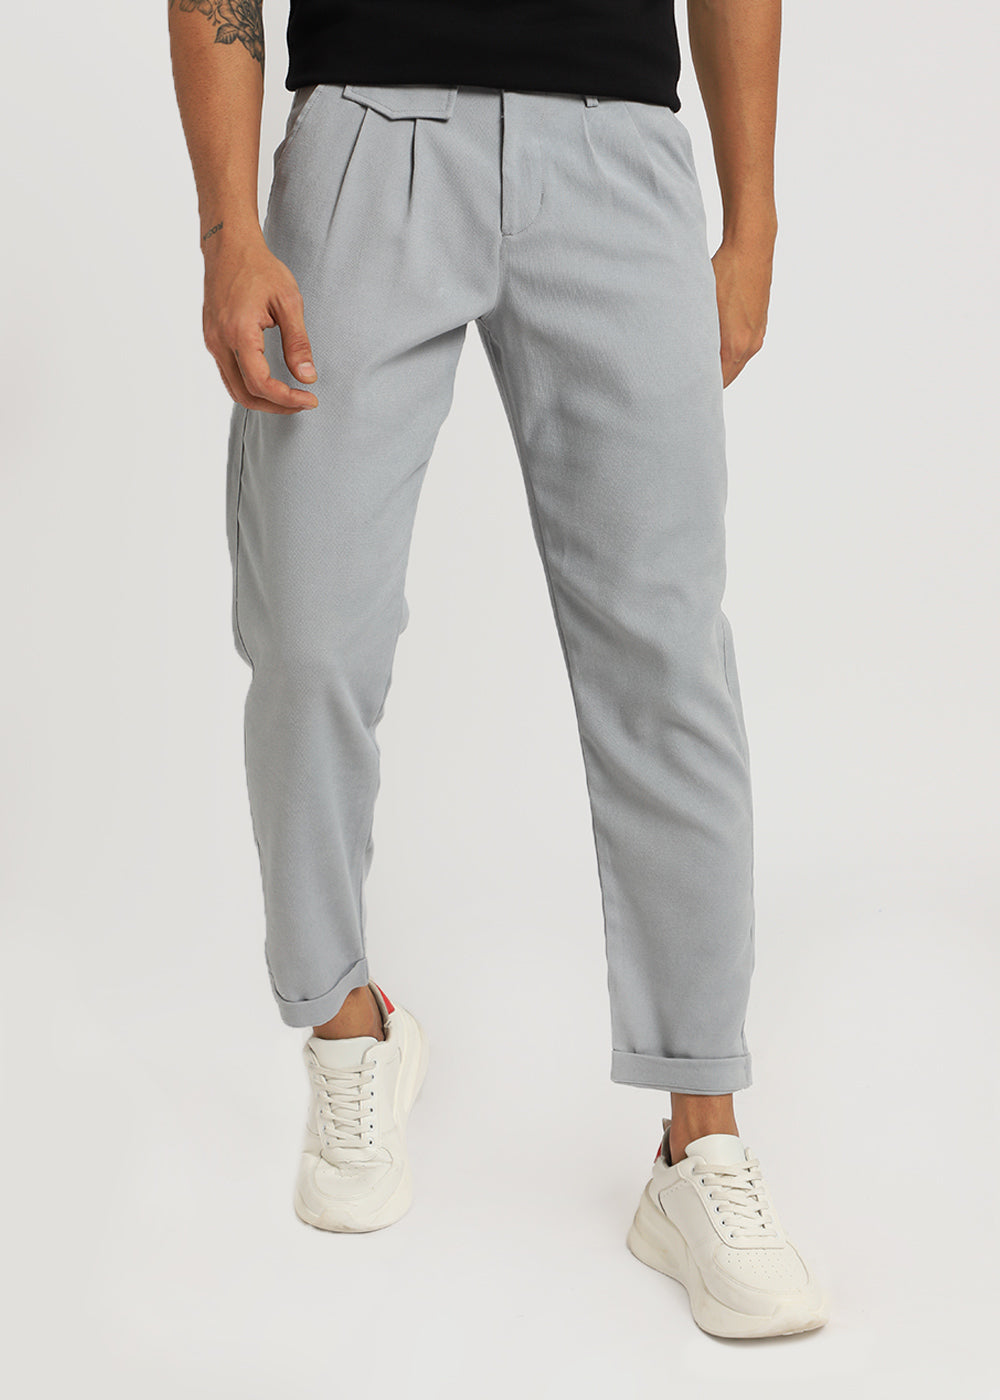 Blaze Gray Korean Trouser